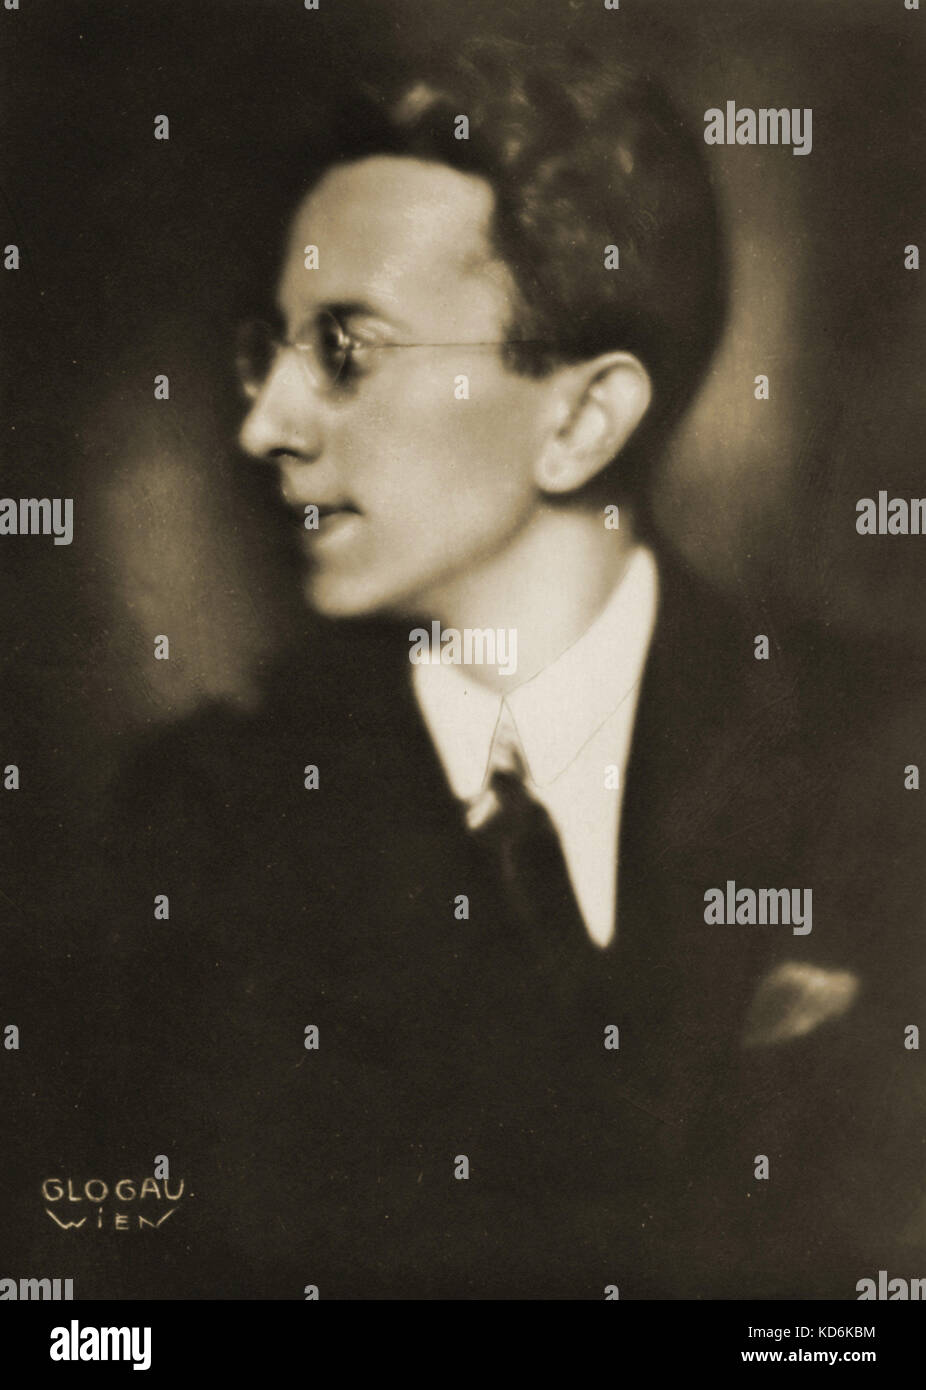 Fritz Mahler, Austrian-American d'orchestre, 1901-1973. Neveu de Gustav Mahler. Photo prise par Glogau, Vienne. Banque D'Images